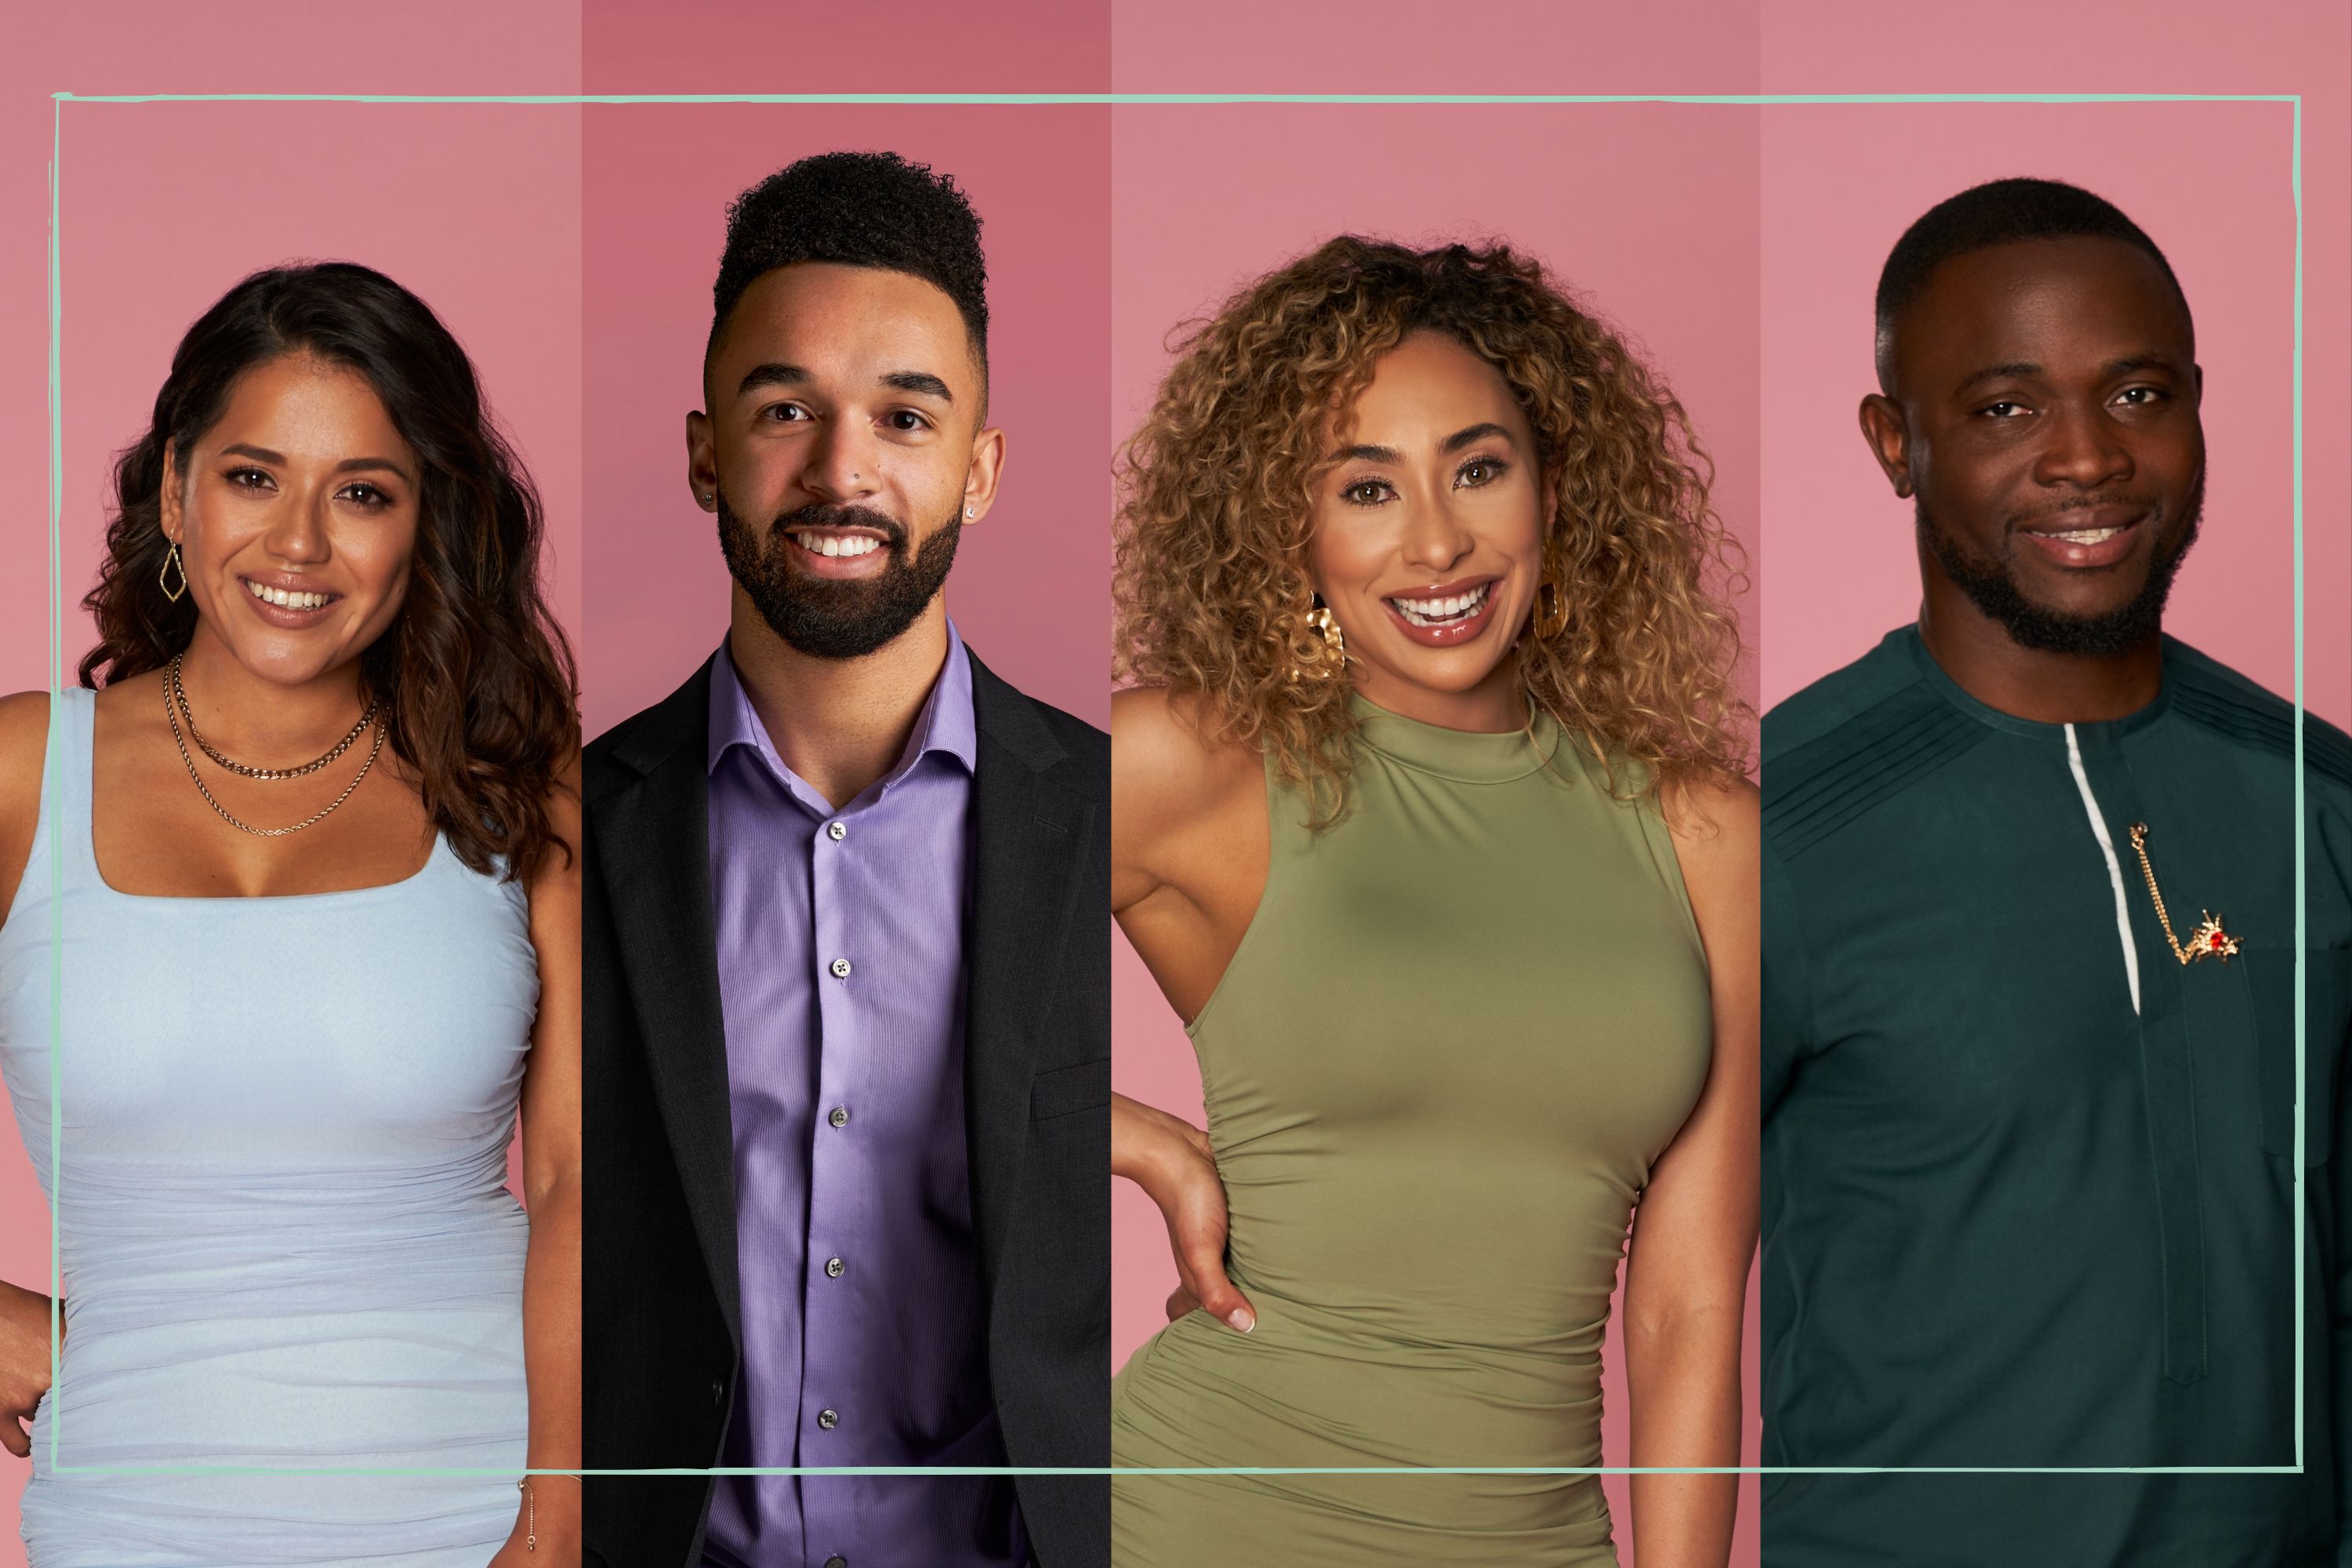 Blind Dating - Full Cast & Crew - TV Guide